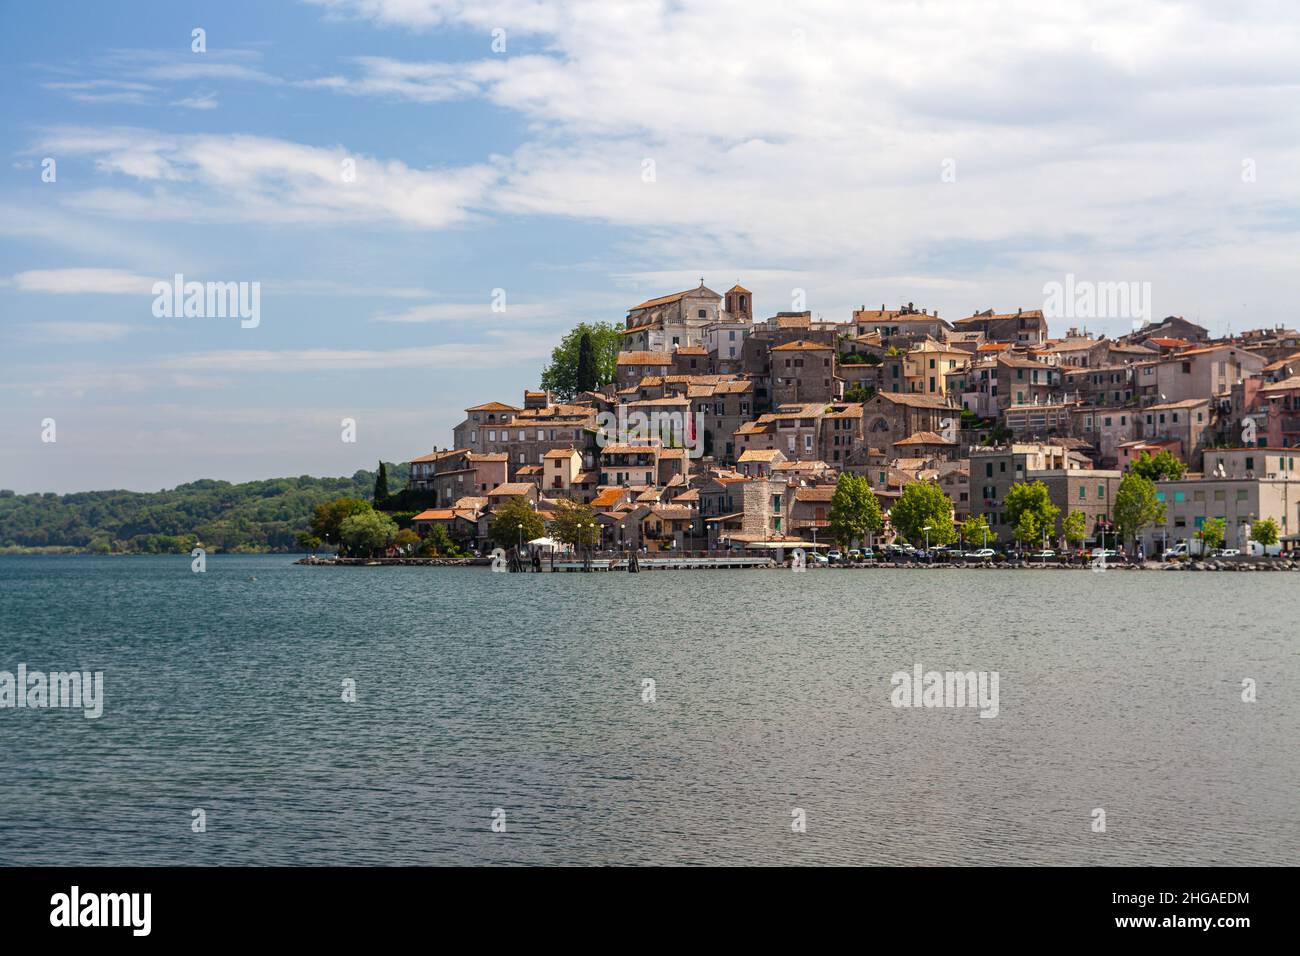 Paysage de la petite ville d'Anguillara Sabazia sur le lac de Bracciano, Lazio, Italie Banque D'Images